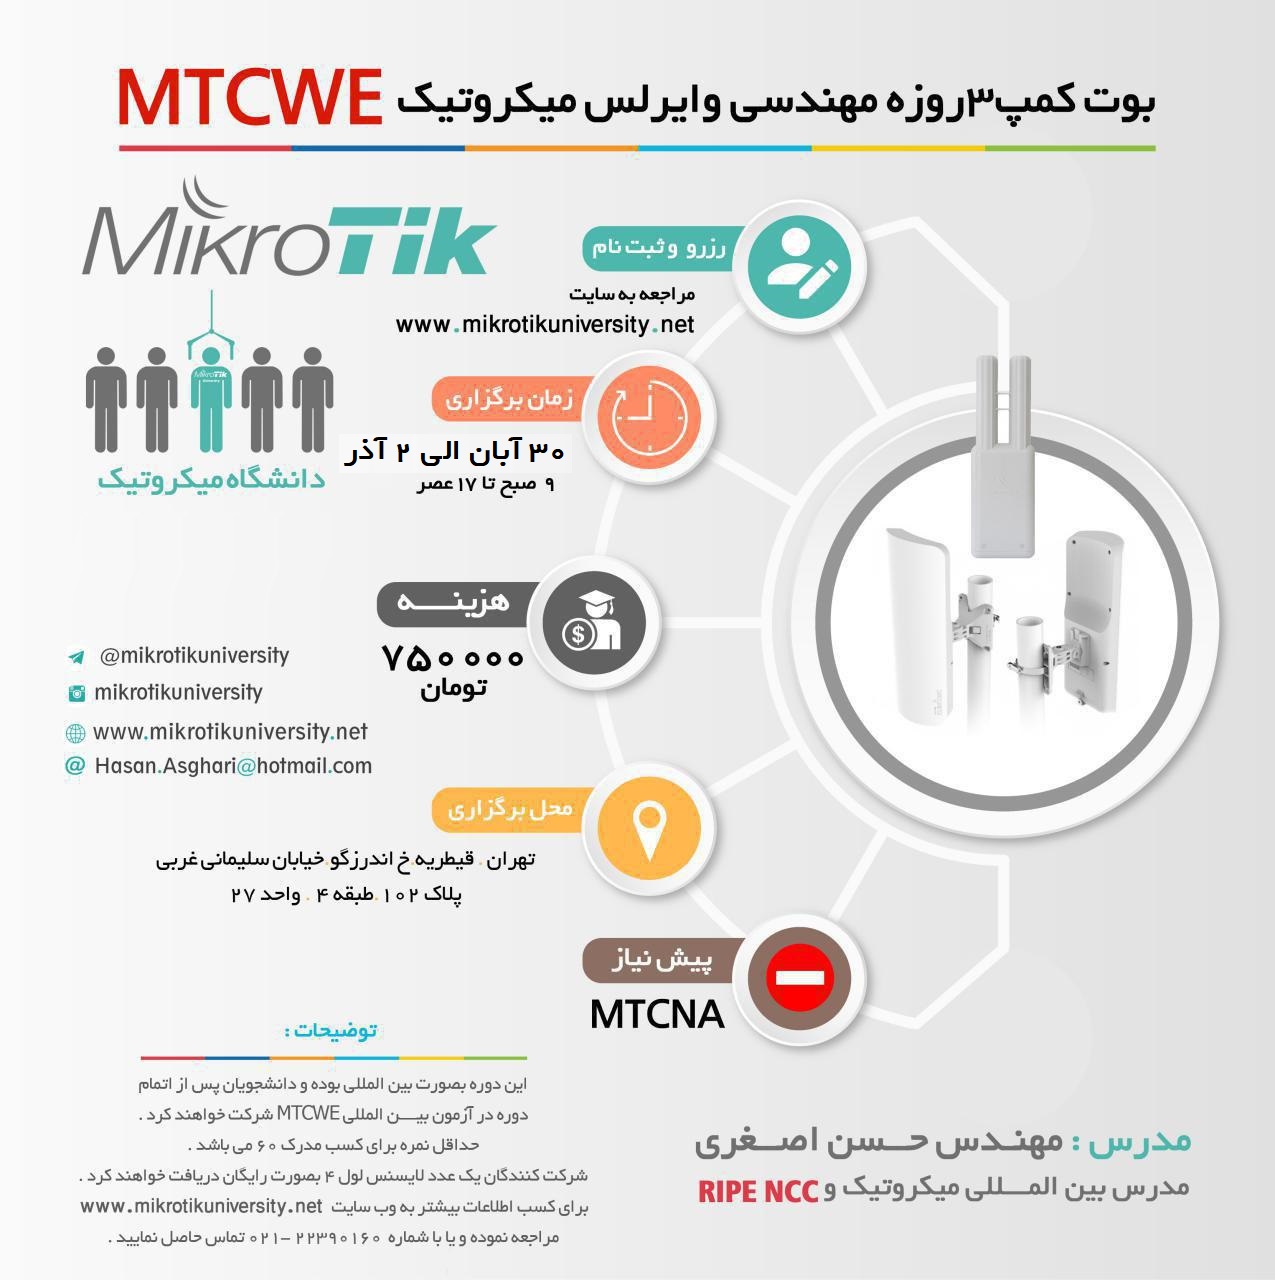 بوت کمپ آموزشی مهندسی وایرلس میکروتیک MTCWE تهران 30 الی 2 آذر